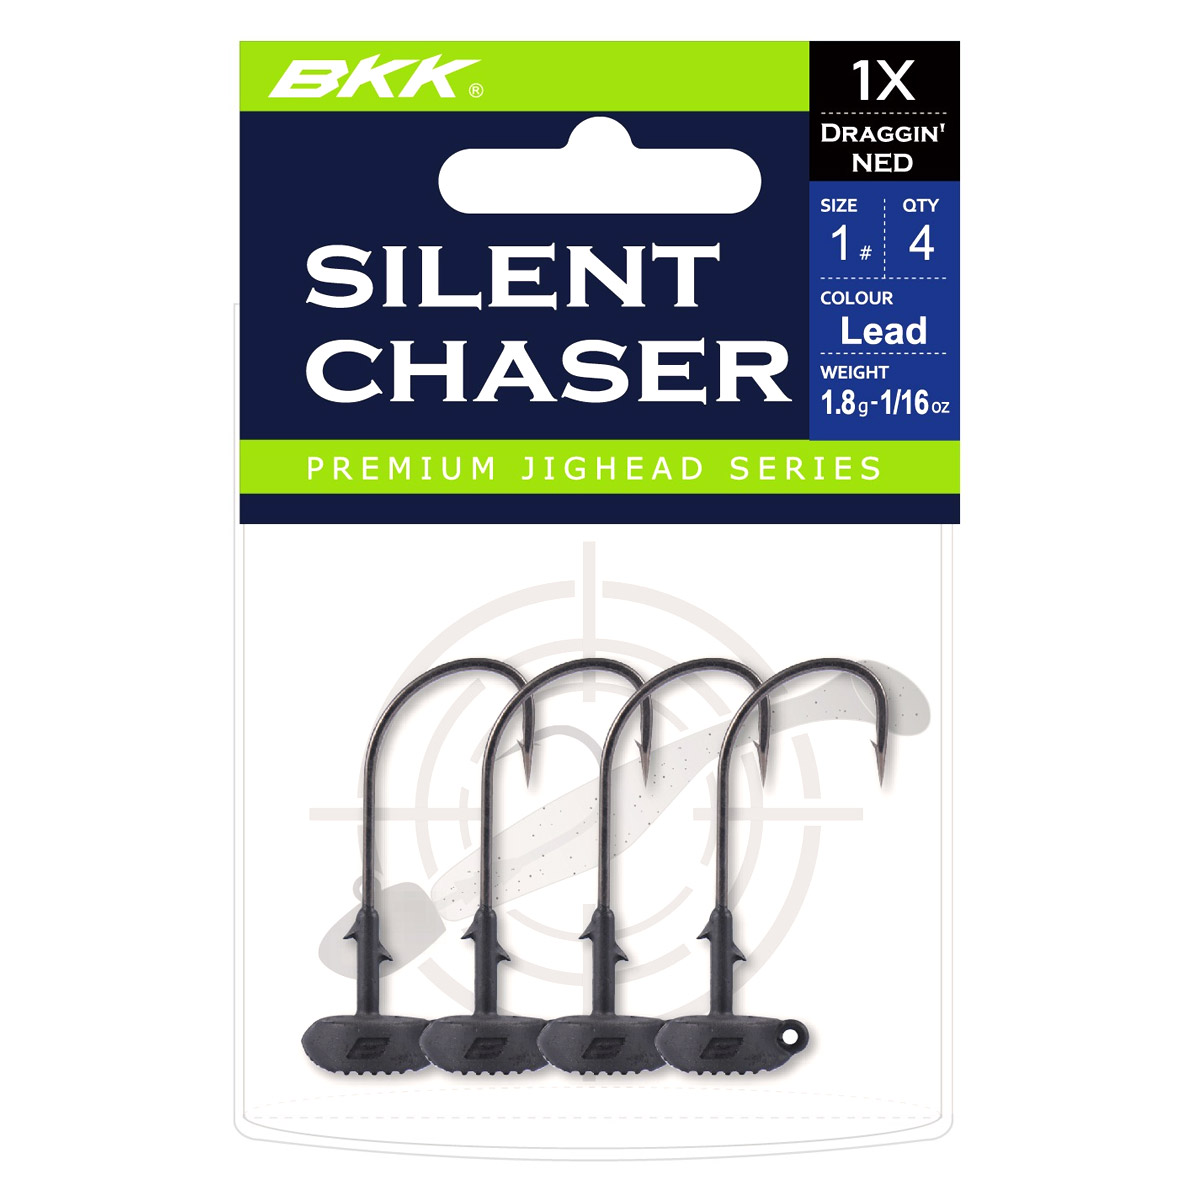 BKK Silent Chaser Draggin' Ned Green Size 1